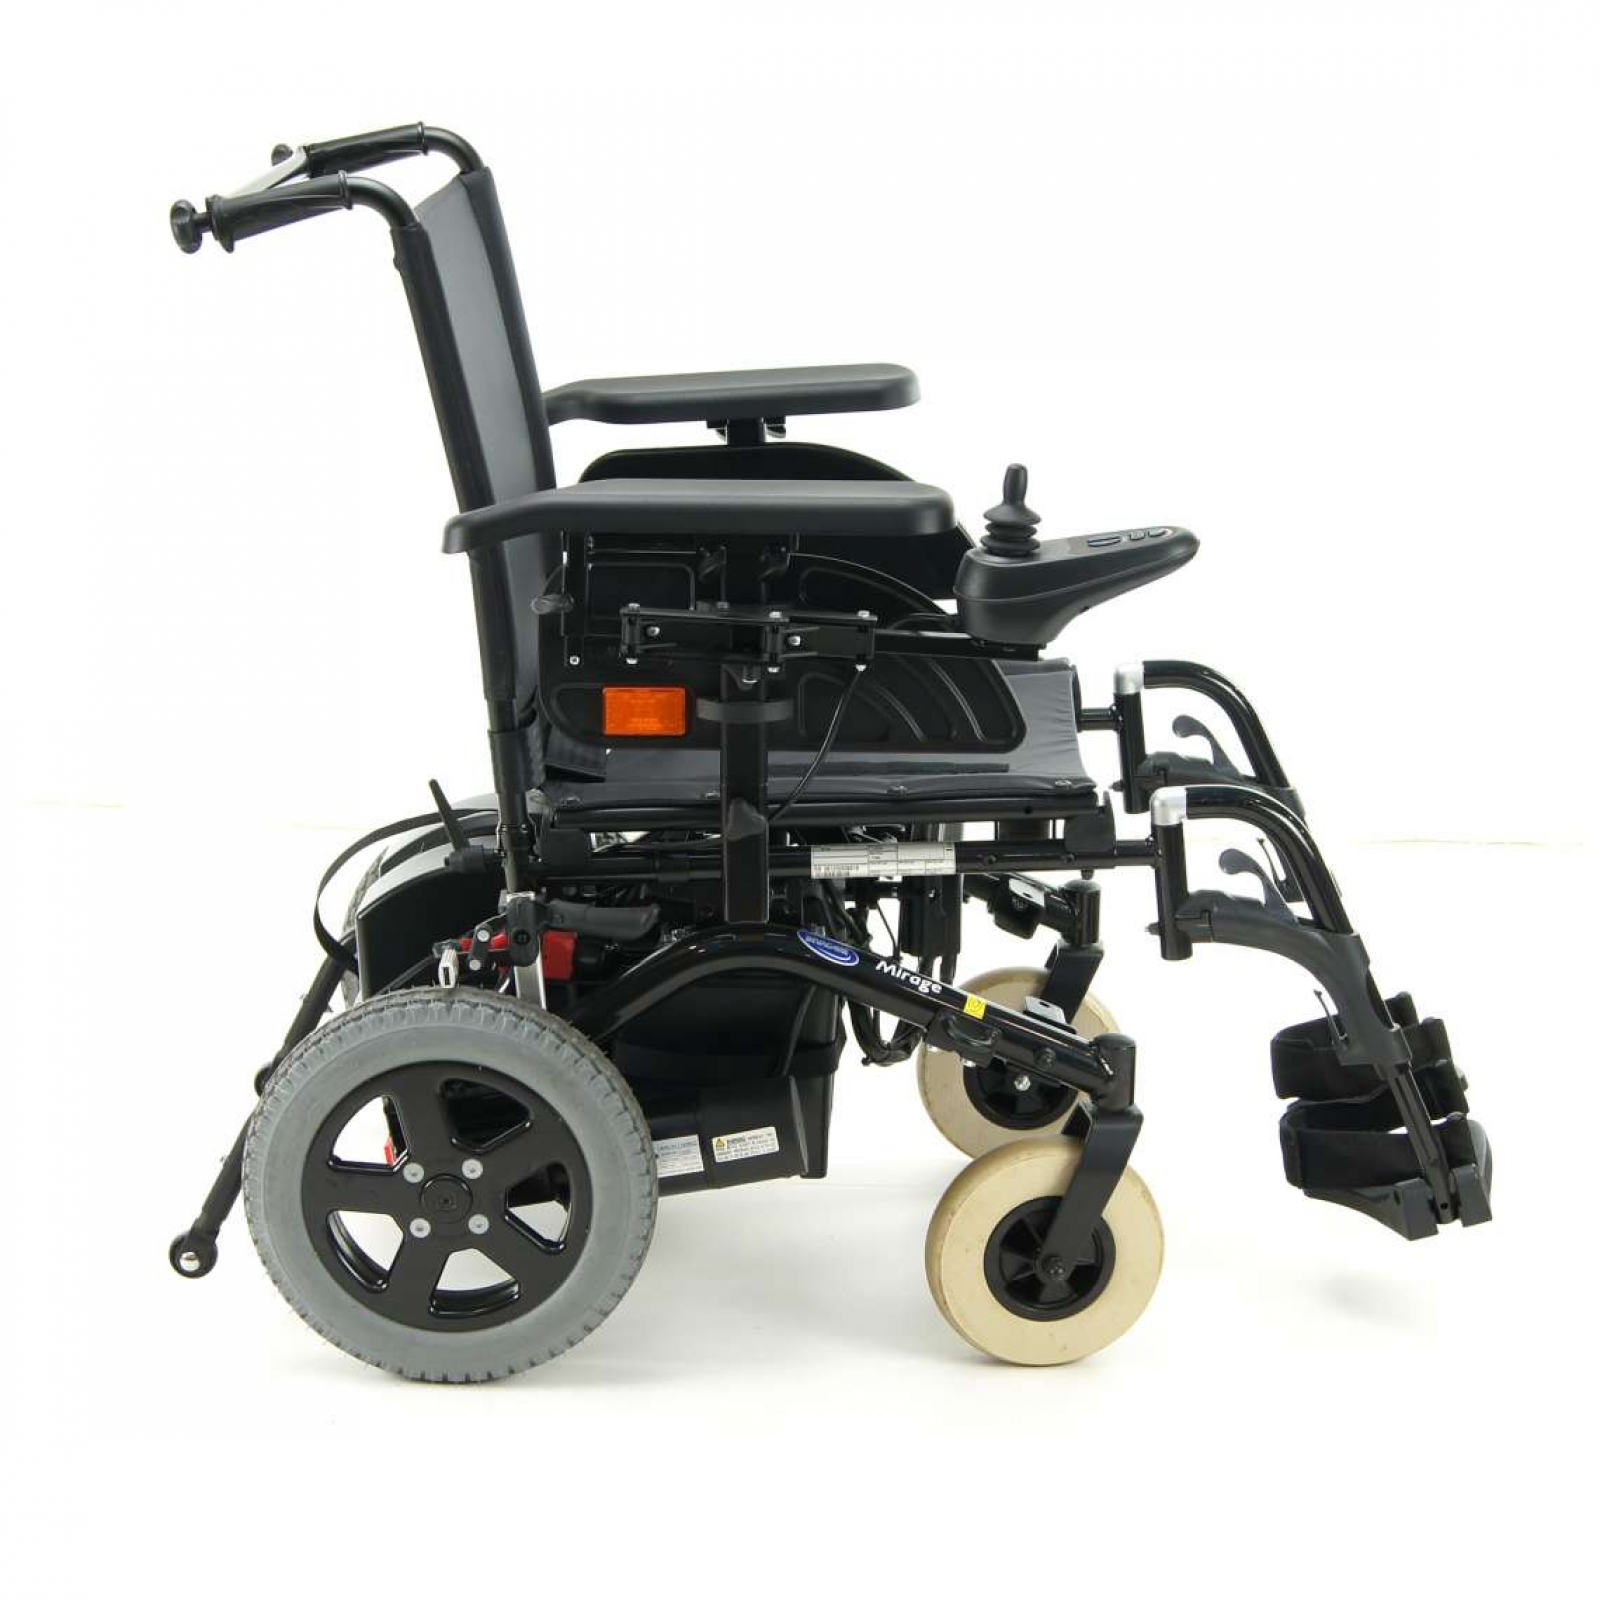 Mirage Powered Wheelchair